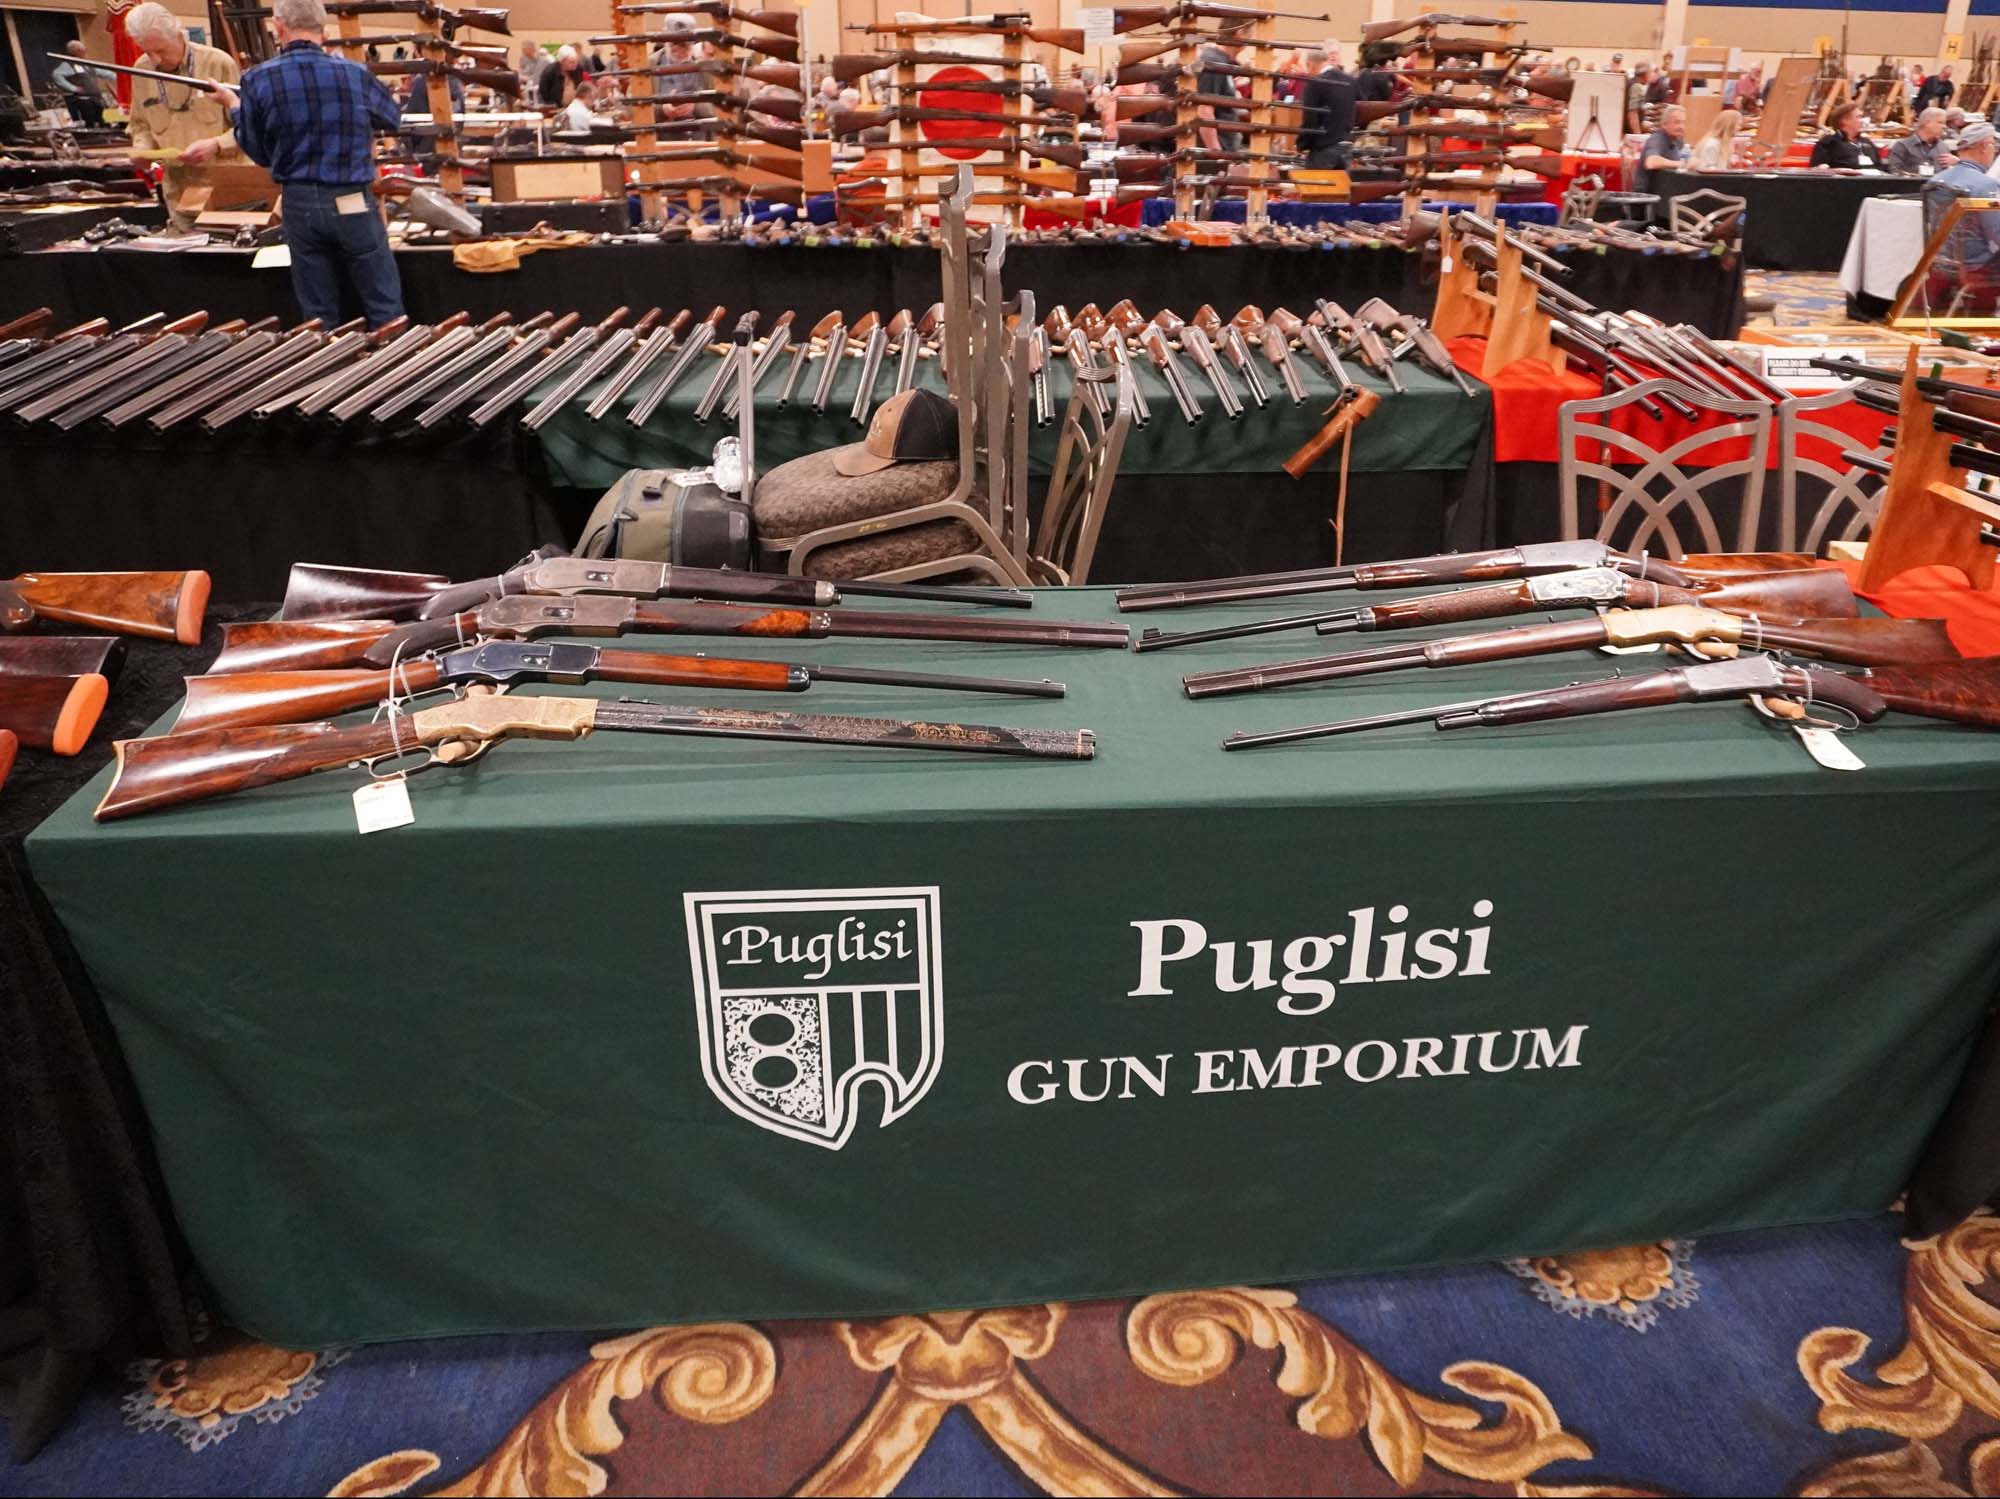 Antique Arms Show 2020 - Puglisi Gun Emporium Display